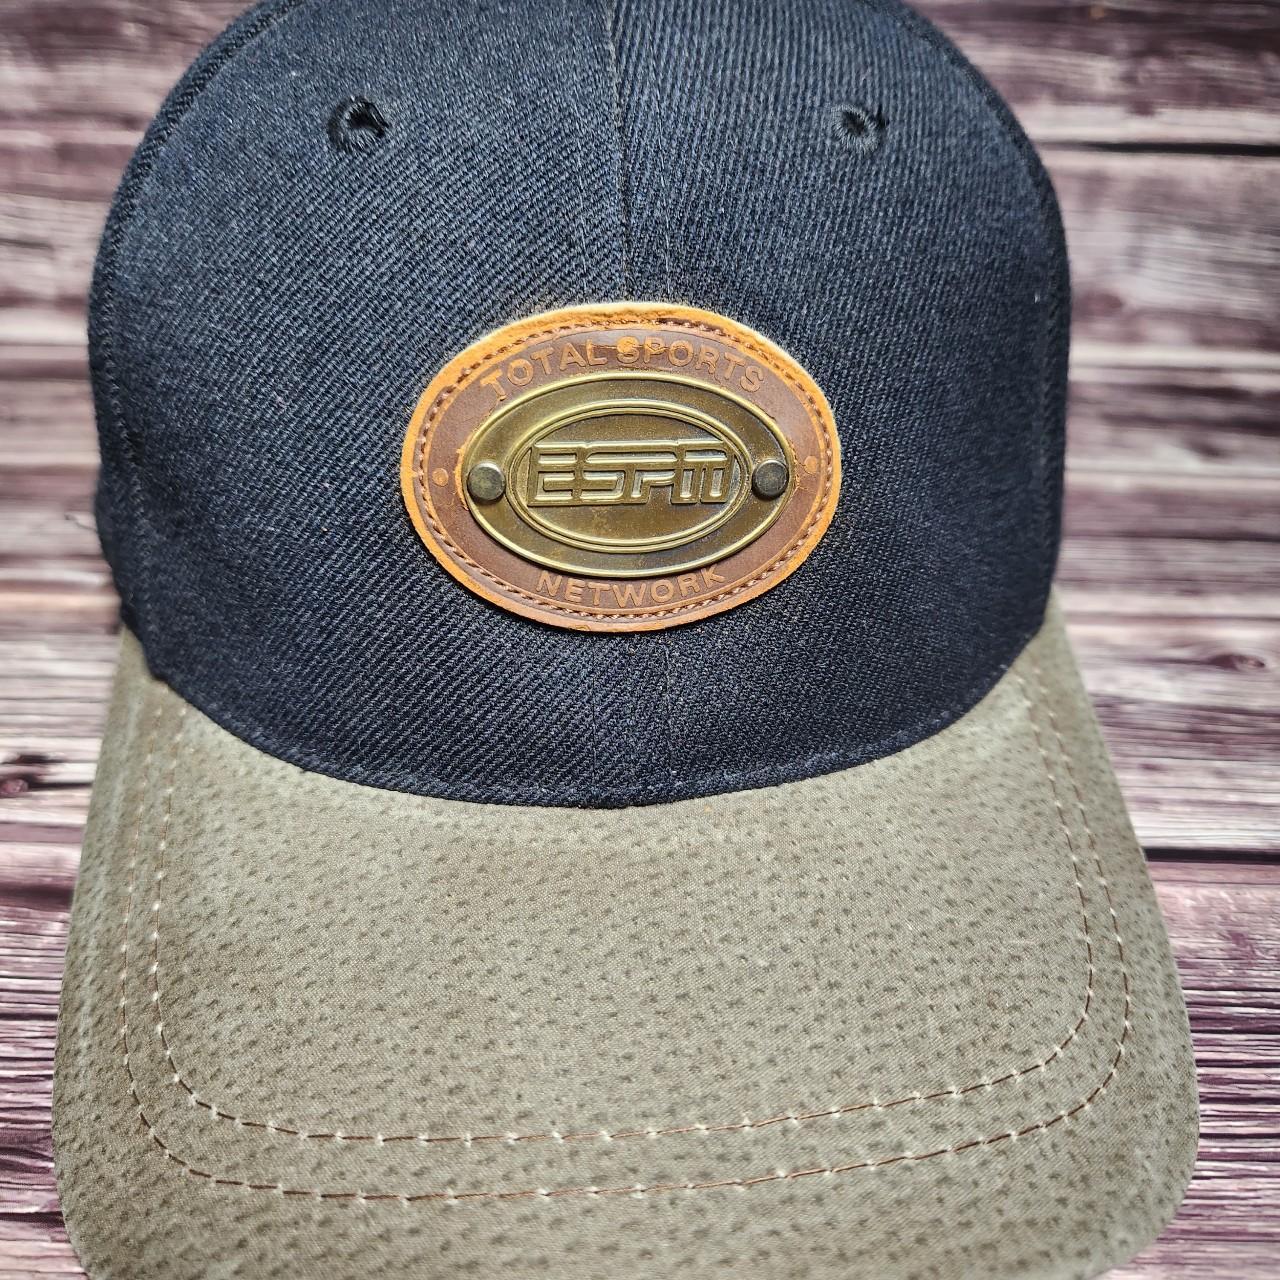 ESPN Trucker Hats for Men